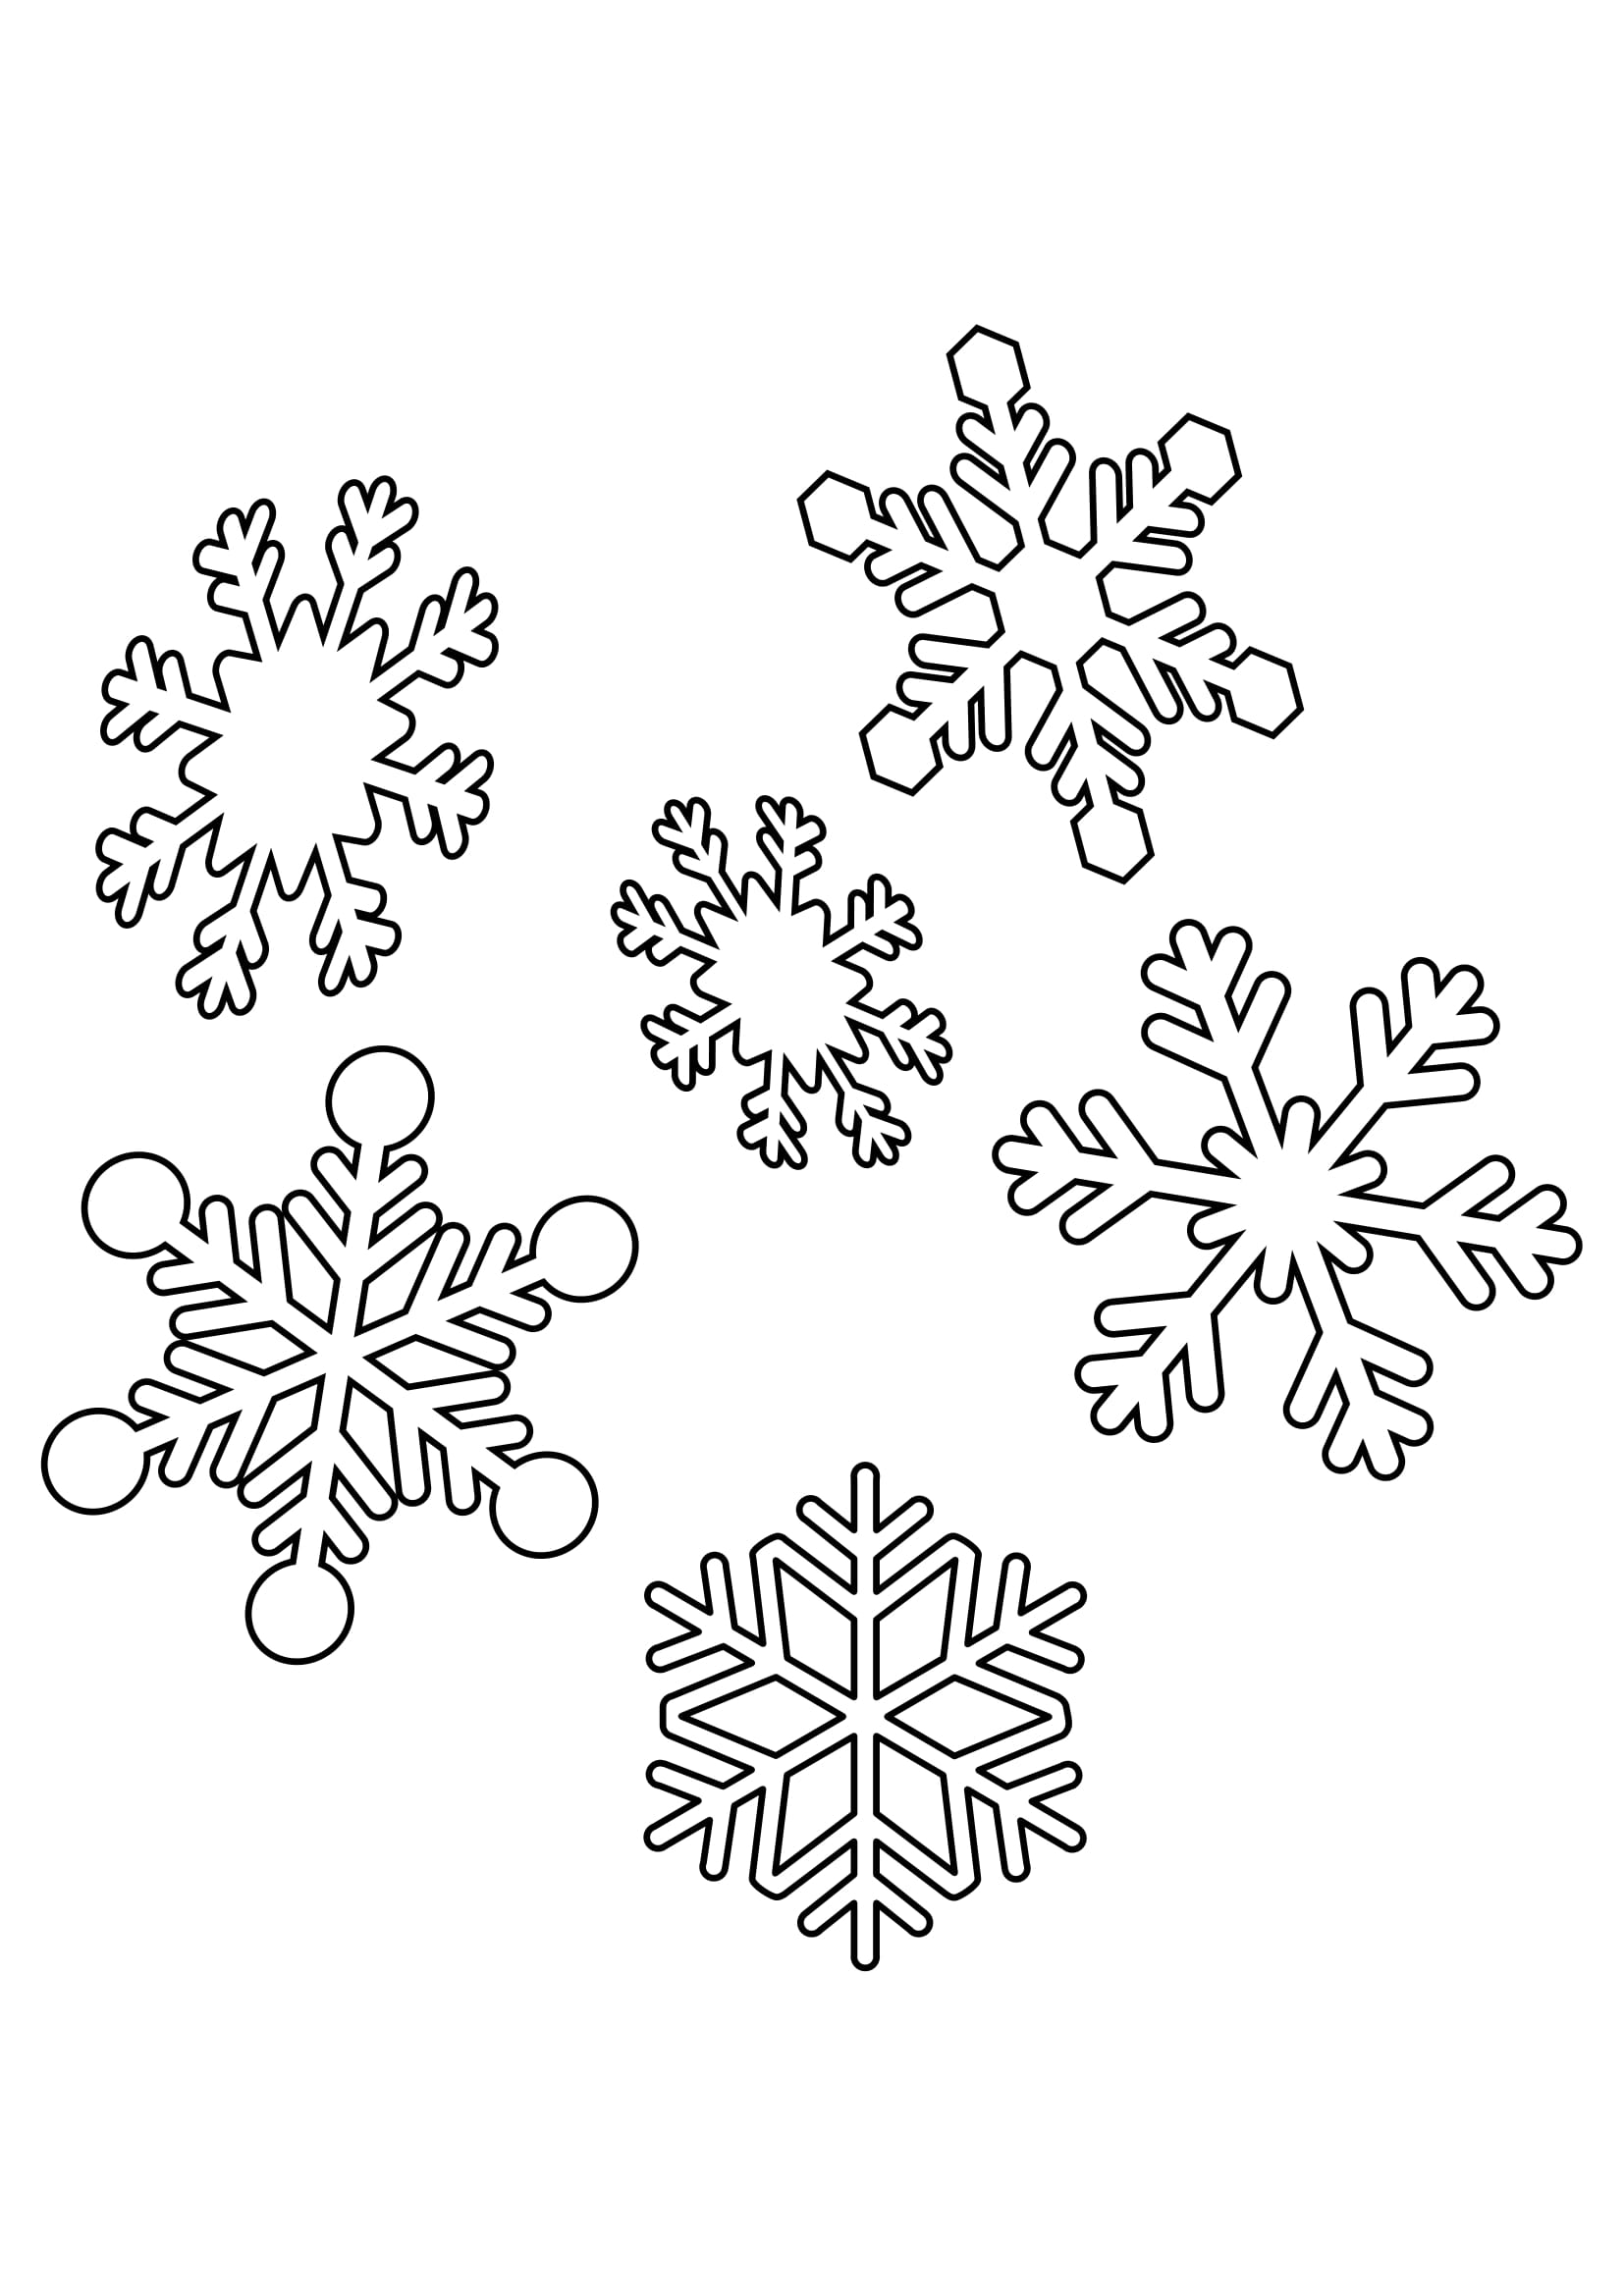 Disegno semplice fiocchi di neve da colorare